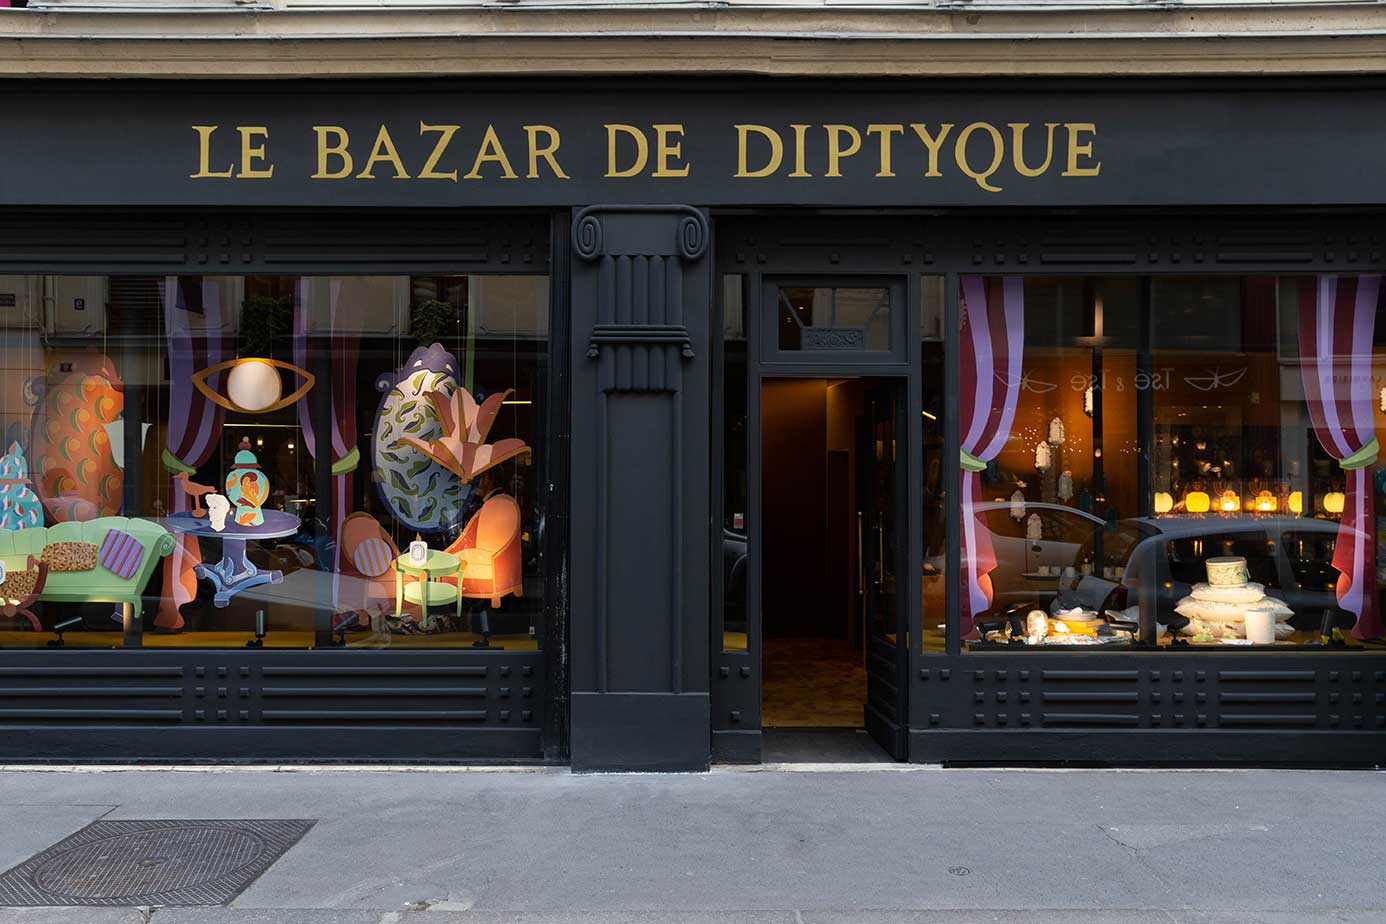 Le Bazar de Diptyque. news parisiennes. septembre 2019. Plume Voyage Magazine #plumevoyage @plumevoyagemagazine @plumevoyage © DR